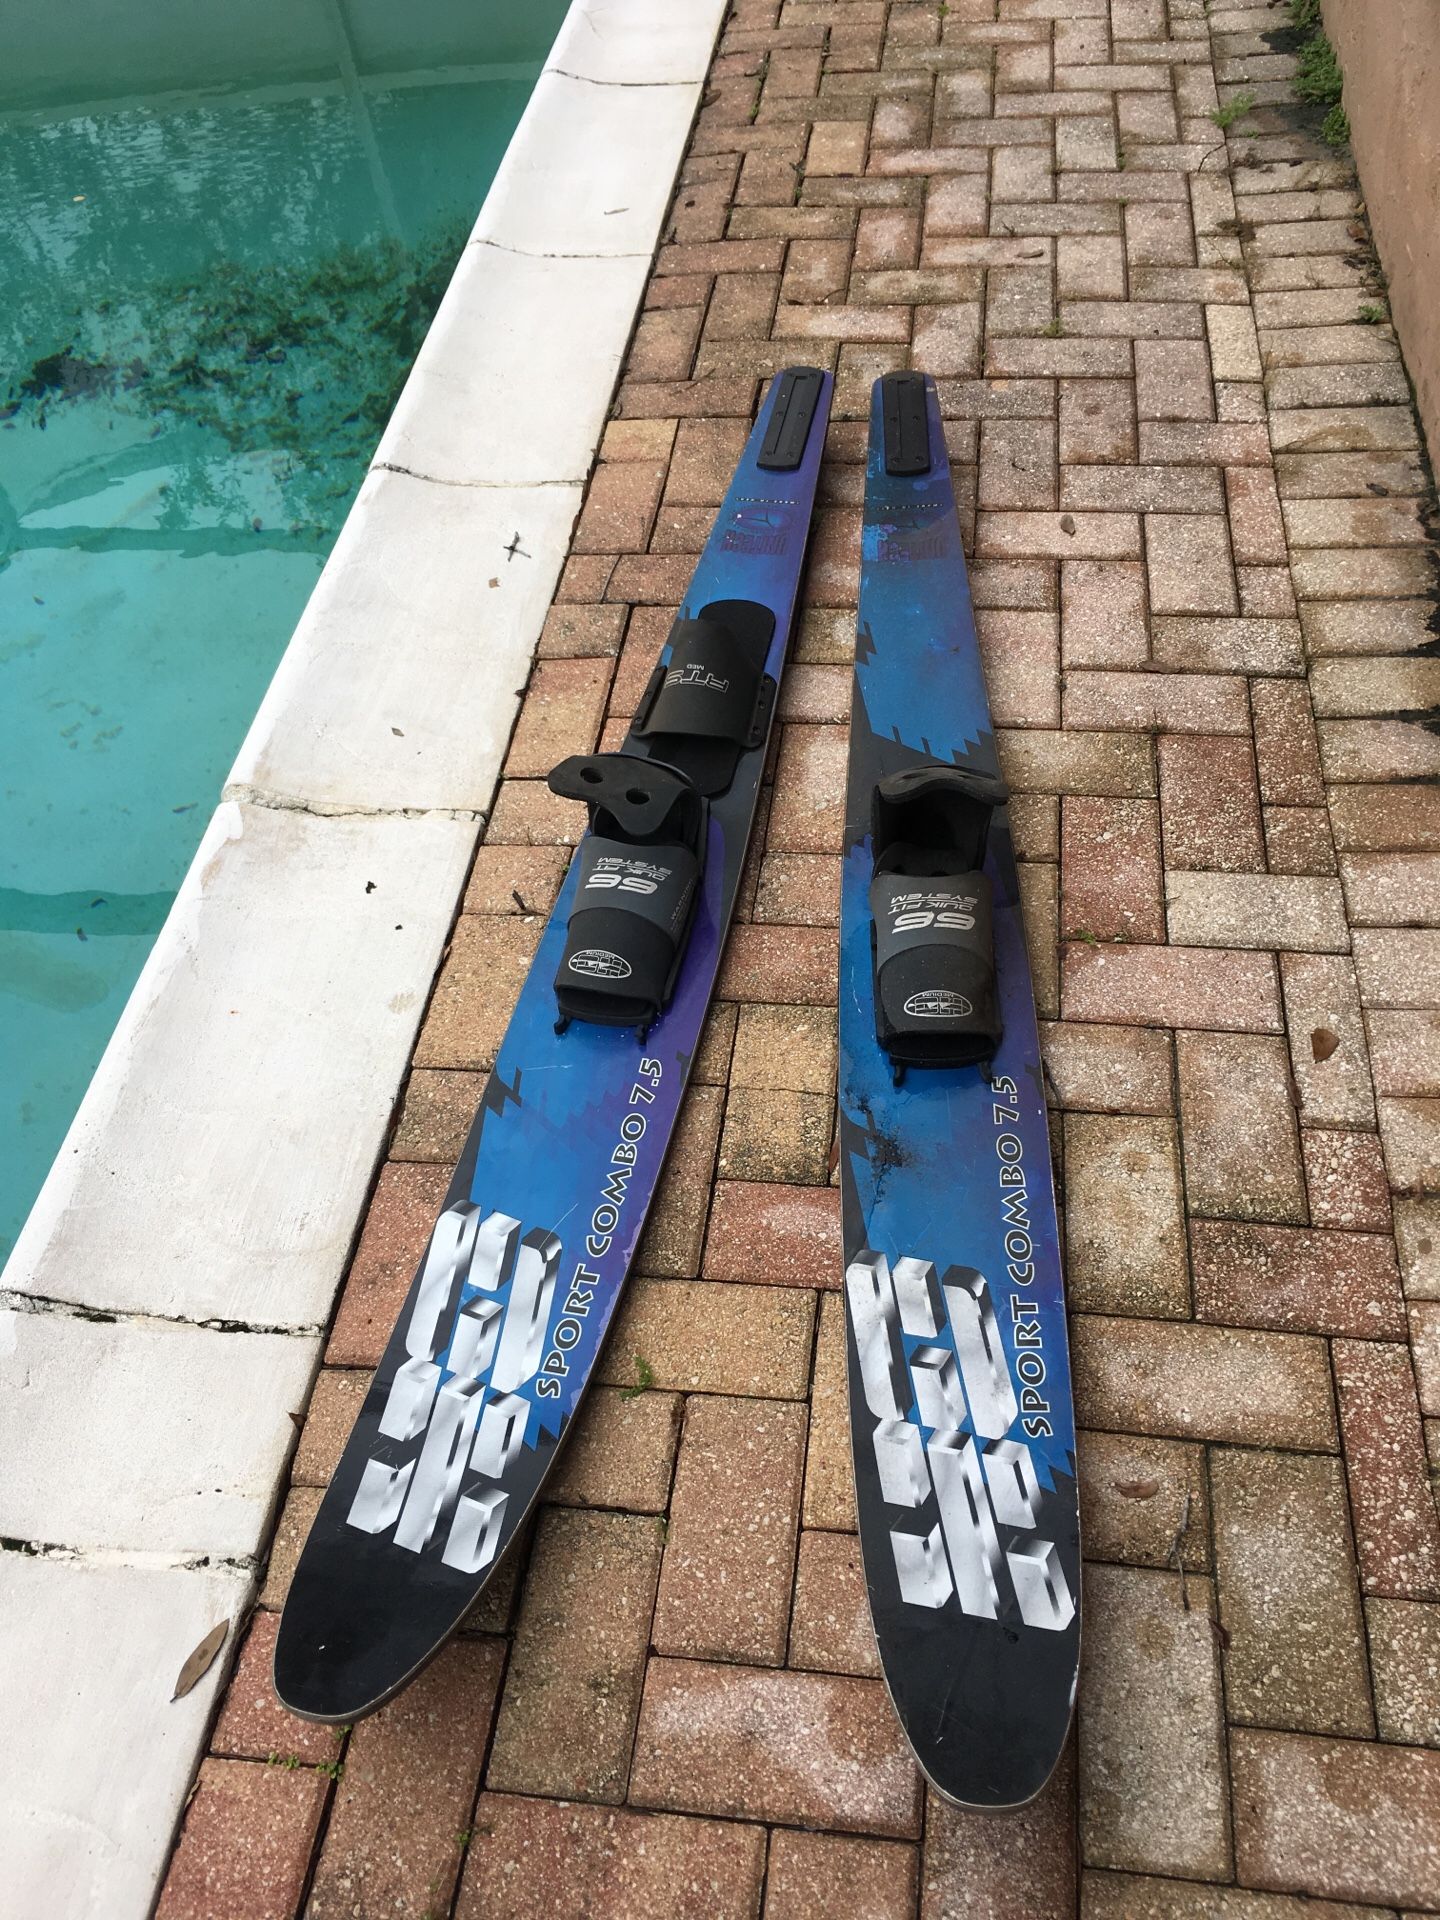 Water skis 67” long.